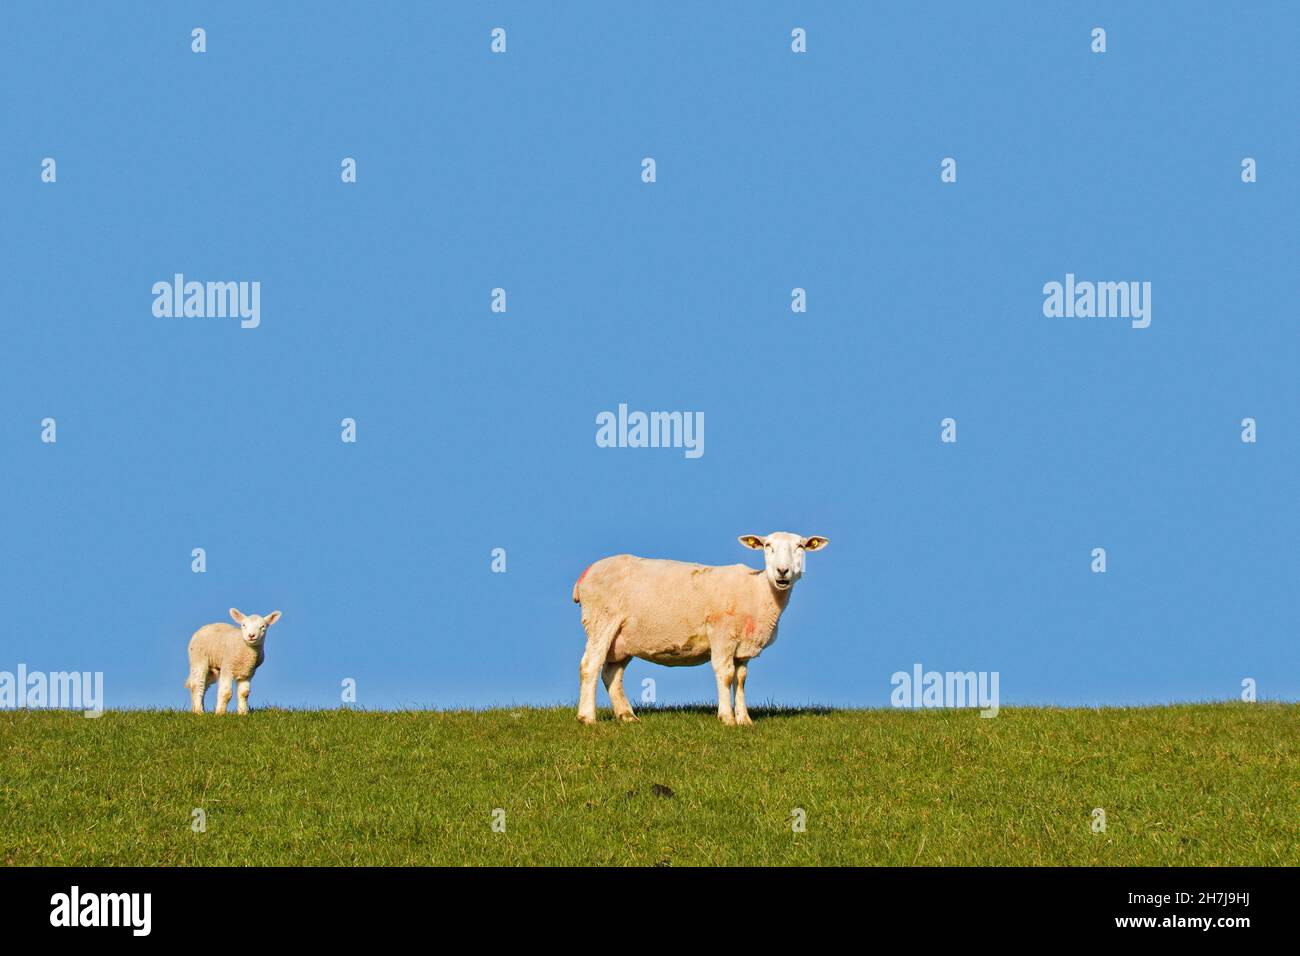 Oveja doméstica con cordero blanco retratado contra el cielo azul Foto de stock